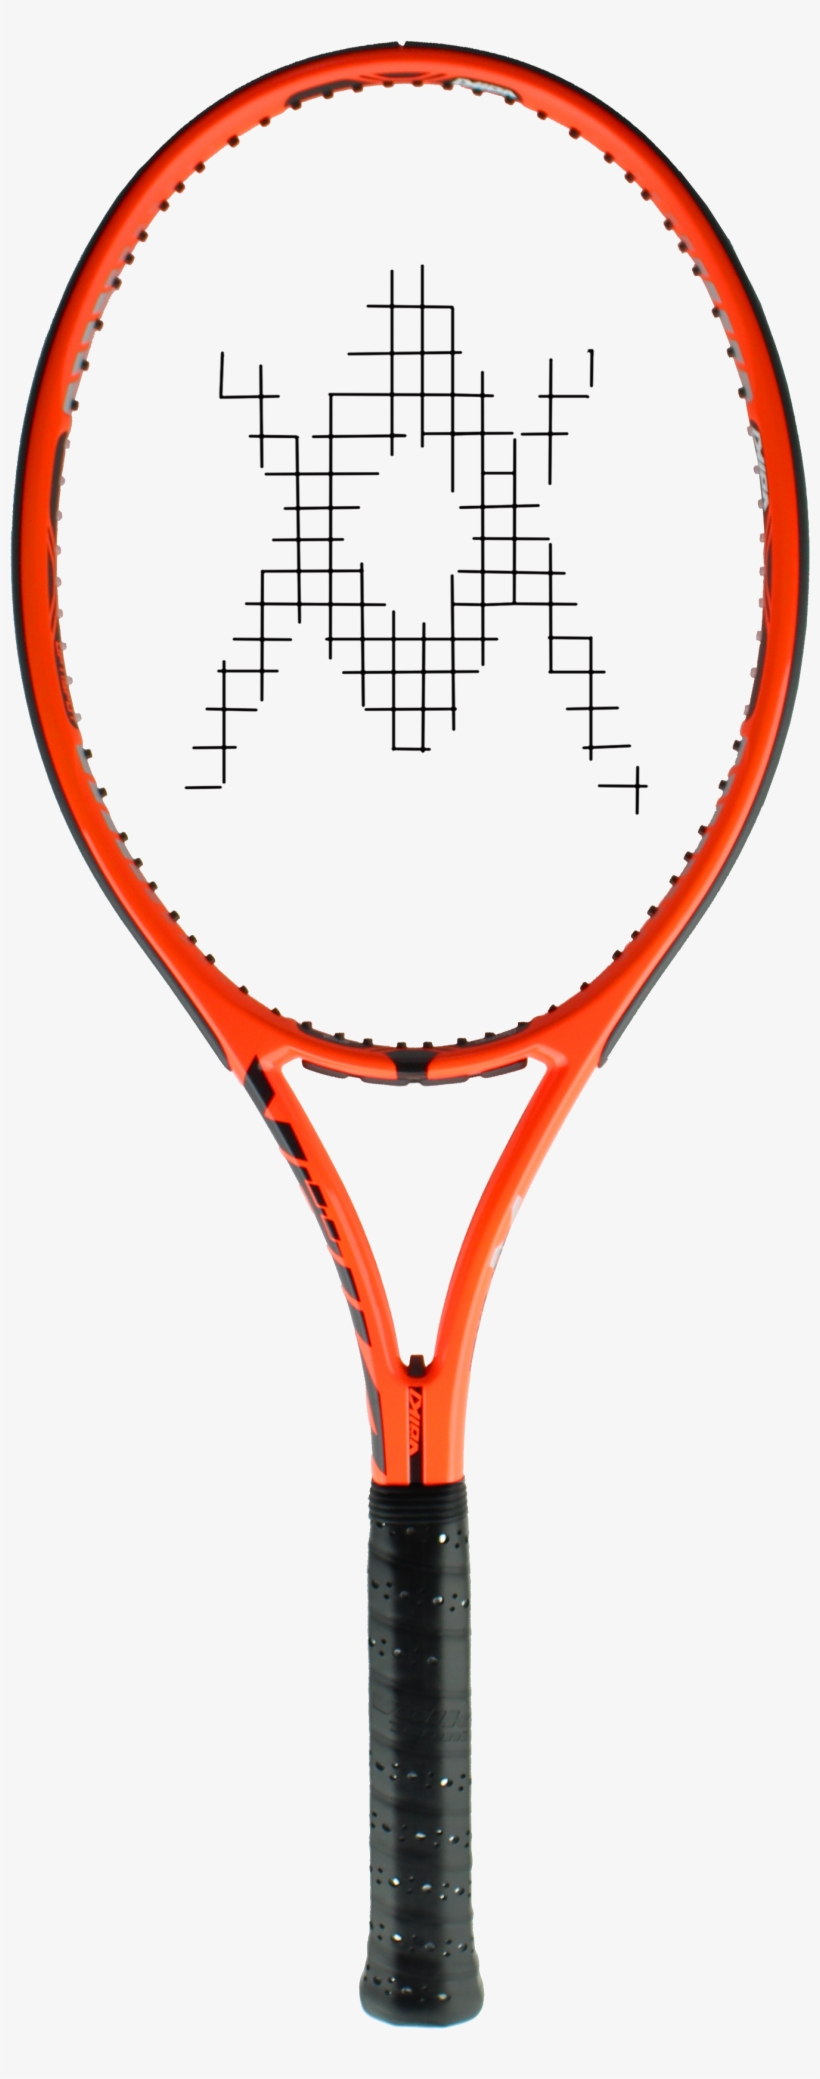 Download - Volkl Organix 9 Super G Tennis Racquet, transparent png #740006